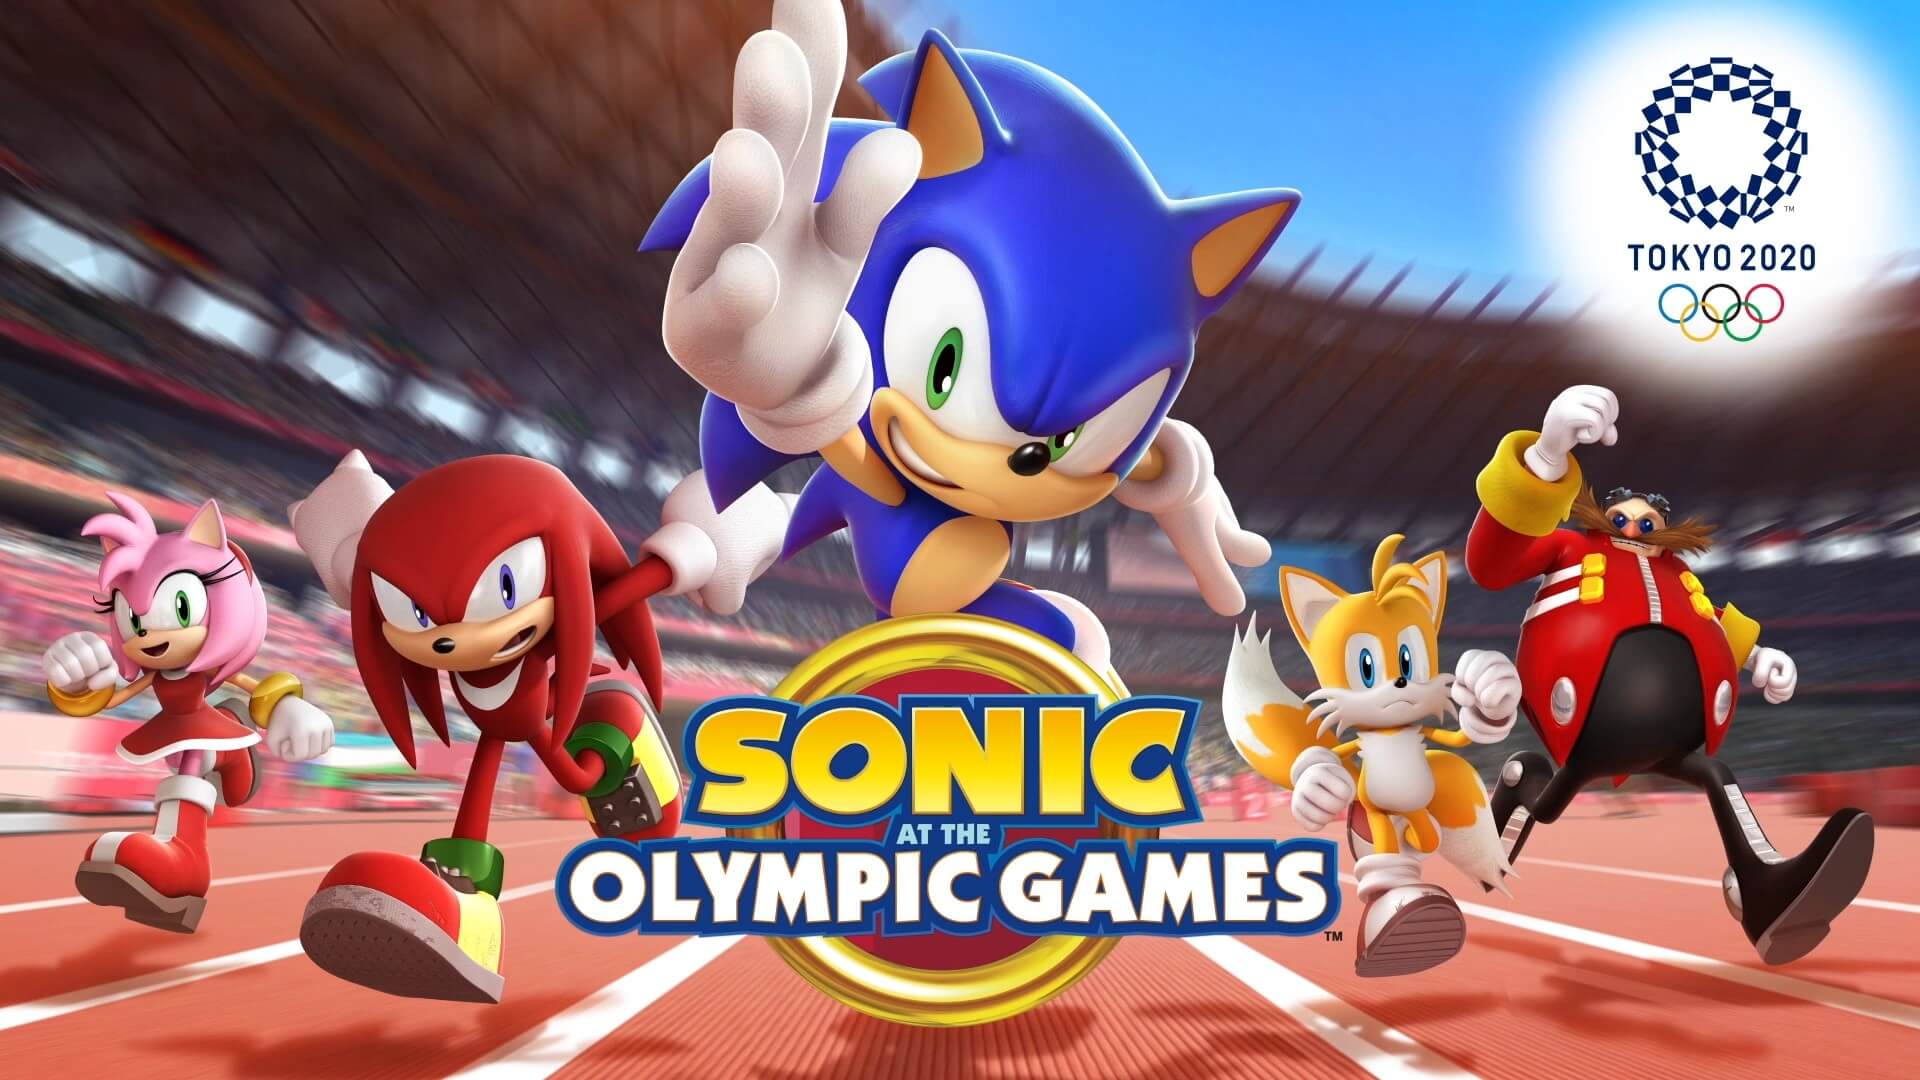 Primer teaser tráiler de Sonic en Los Juegos Olímpicos Tokio 2020